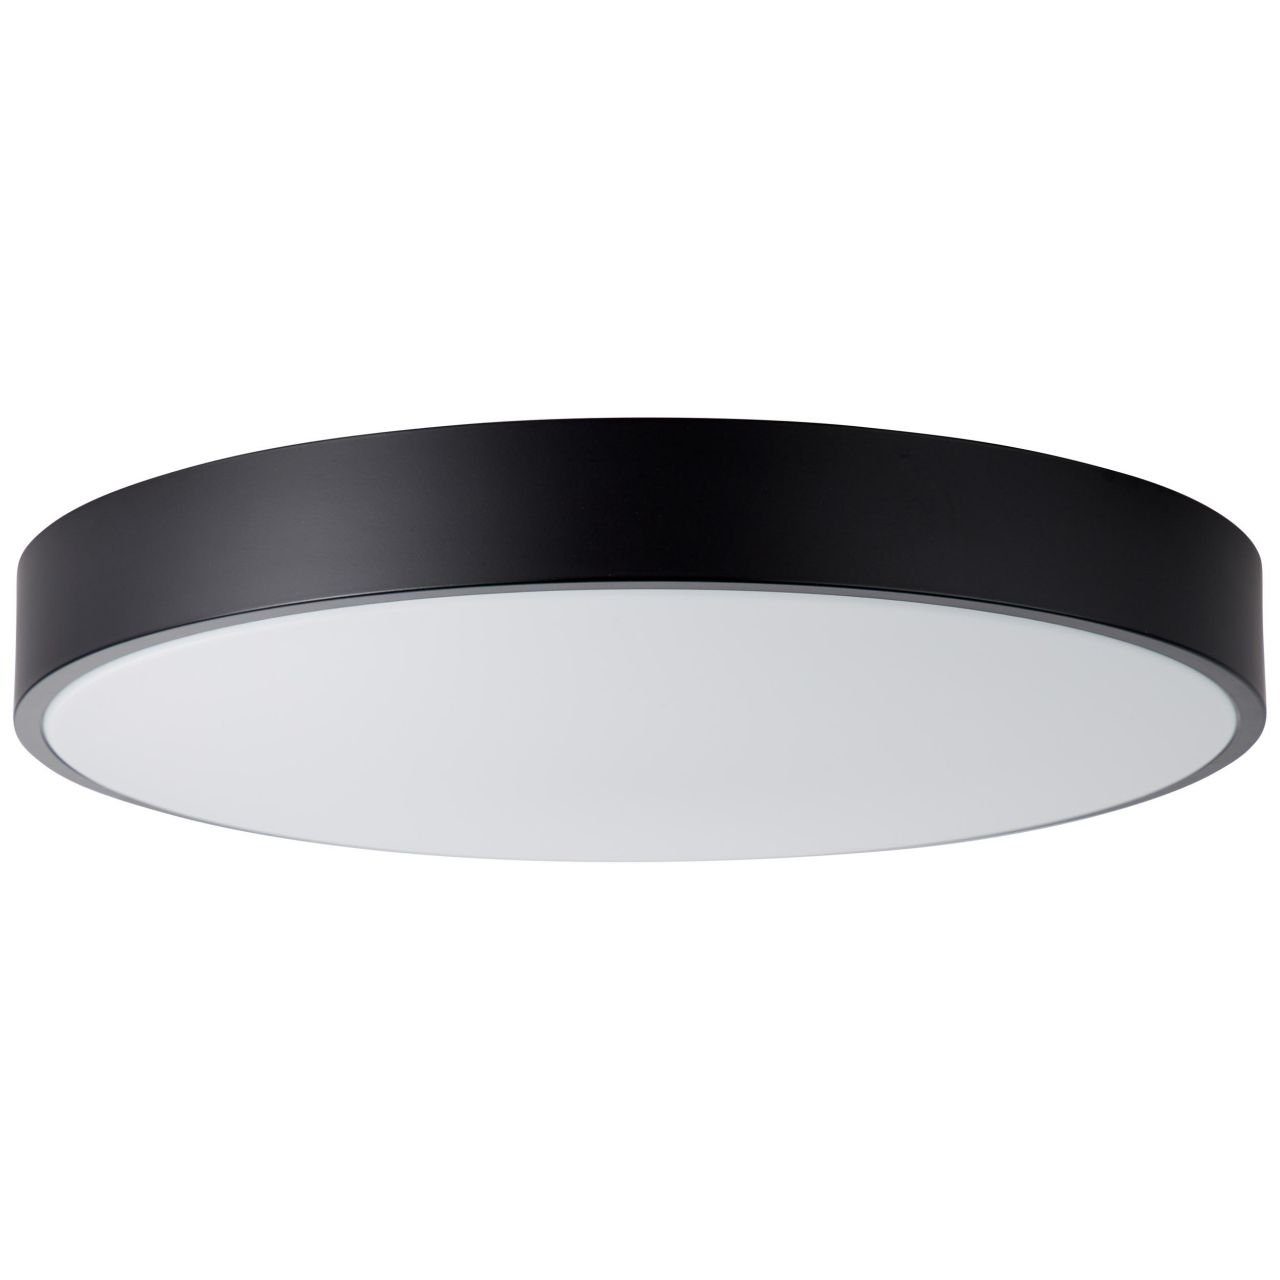 Brilliant Deckenleuchte Slimline, weiß/schwarz 1x 49cm Lampe LED Deckenleuchte LED 60W 3000-6500K, integr Slimline